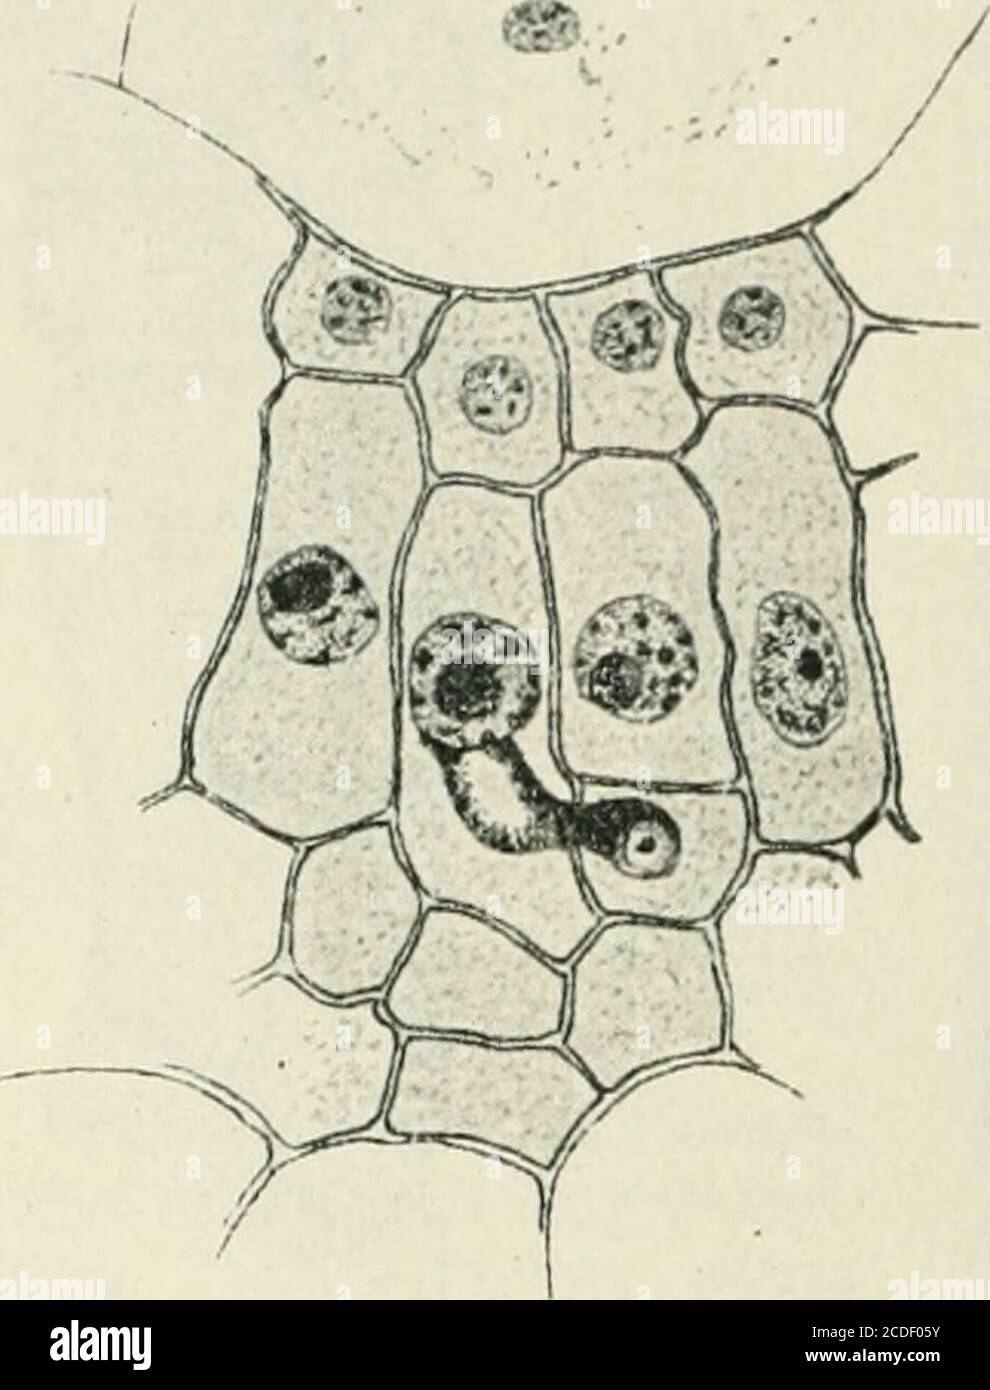 . Allgemeine Pflanzenkaryologie . 906^1 fürMelampsora Rostrupi, von E. W. Olive (1908) für Caeoma nitens,^Gymnoconia intersütialis. d. h. Puccinia Pechiana (Kunkel 1916) undTriphragmium ülmariae, von Pavolini (1910, 1912) für Uromyces Handbuch der Pflanzenanatomie I. 1 B 32 498 Die Kern Verschmelzung Dactylidis und „Fuccinia fusca^), von KURSSANOW (1910) erneut fürPuccinia PecTciana, von DittschIvAG (1910) für Puccinia Falcariae(s. Fig. 332), von Maire (1911) für Puccinia Bunii, von Hoffmann(1912) für JEndophyllum Sempervivi, von FROMME (1912, 1914) füiMelampsora Lini, Uromyces Caladii, Puccin Stock Photo